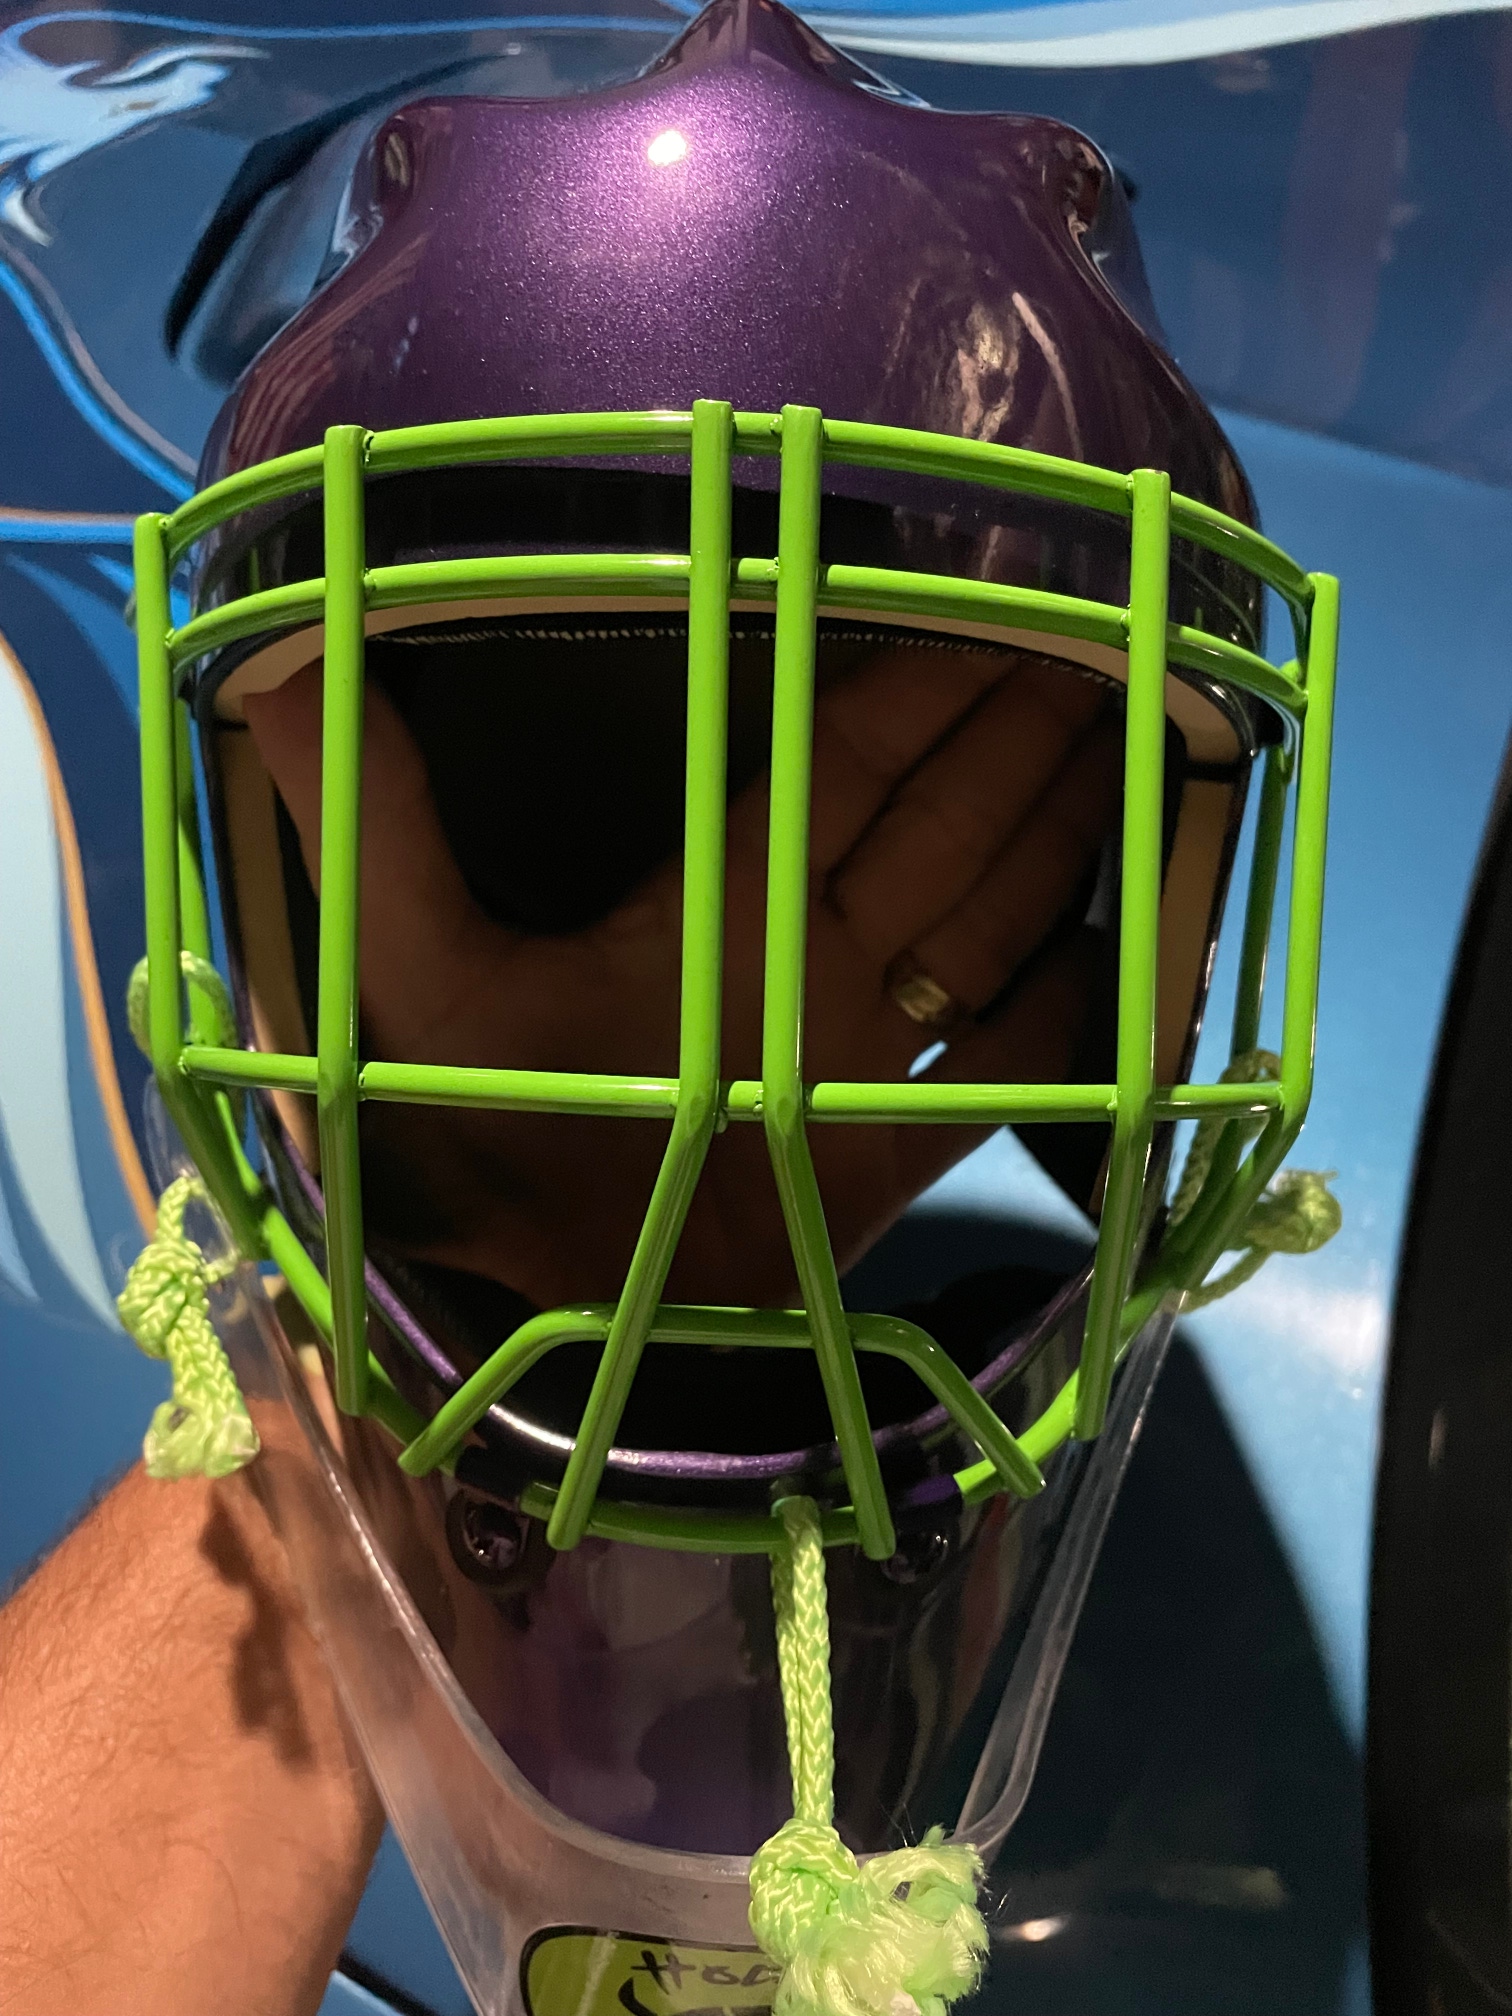 Senior New RS mage Sportmask Goalie Mask